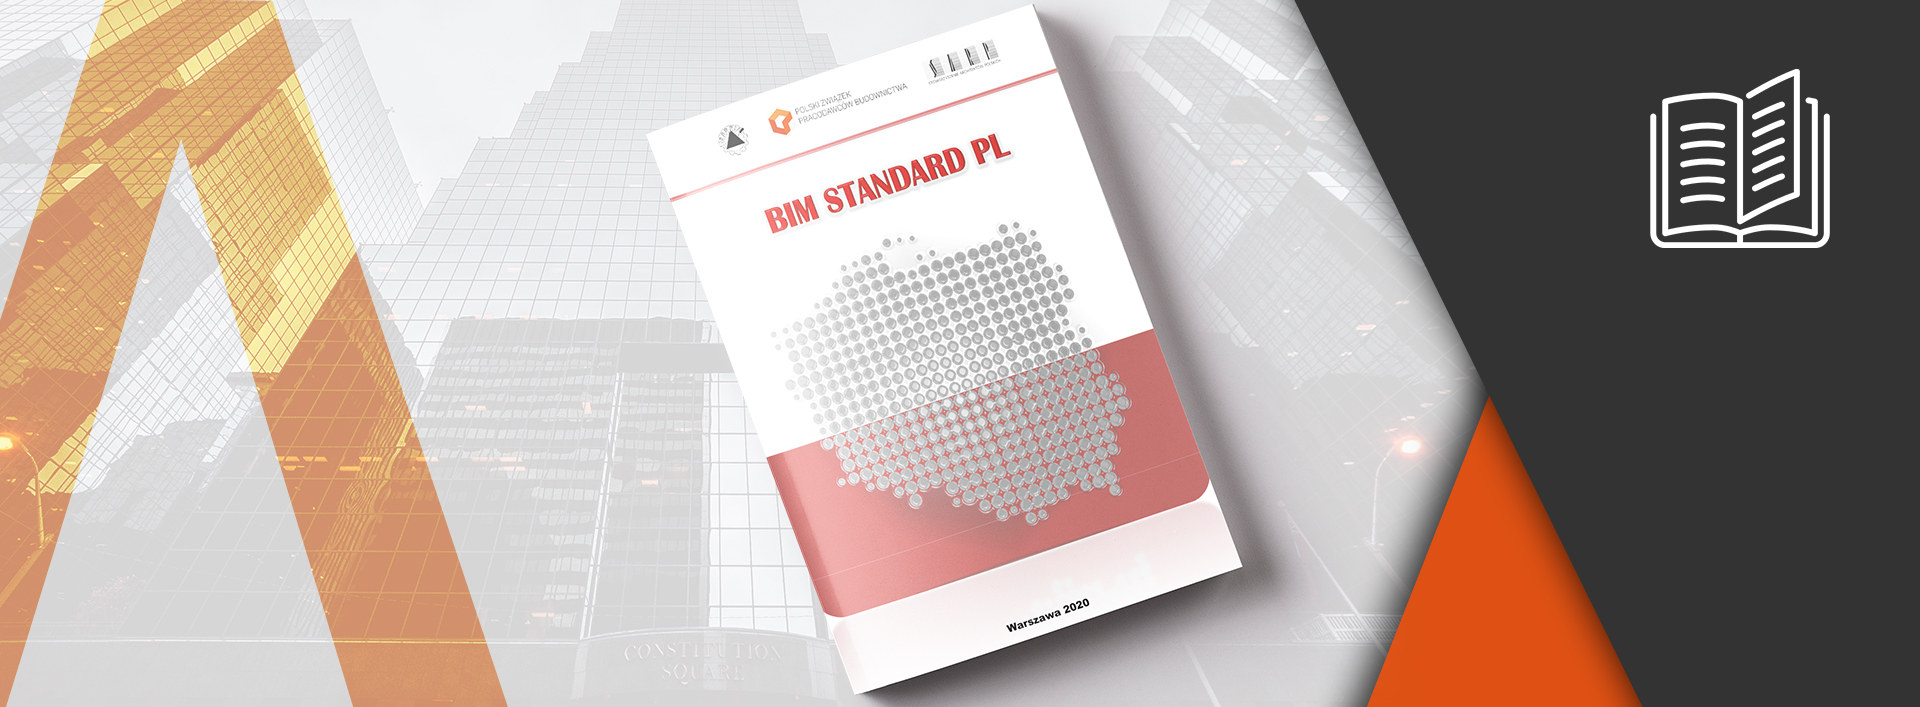 Pierwsza norma BIM Standard PL już dostępna!